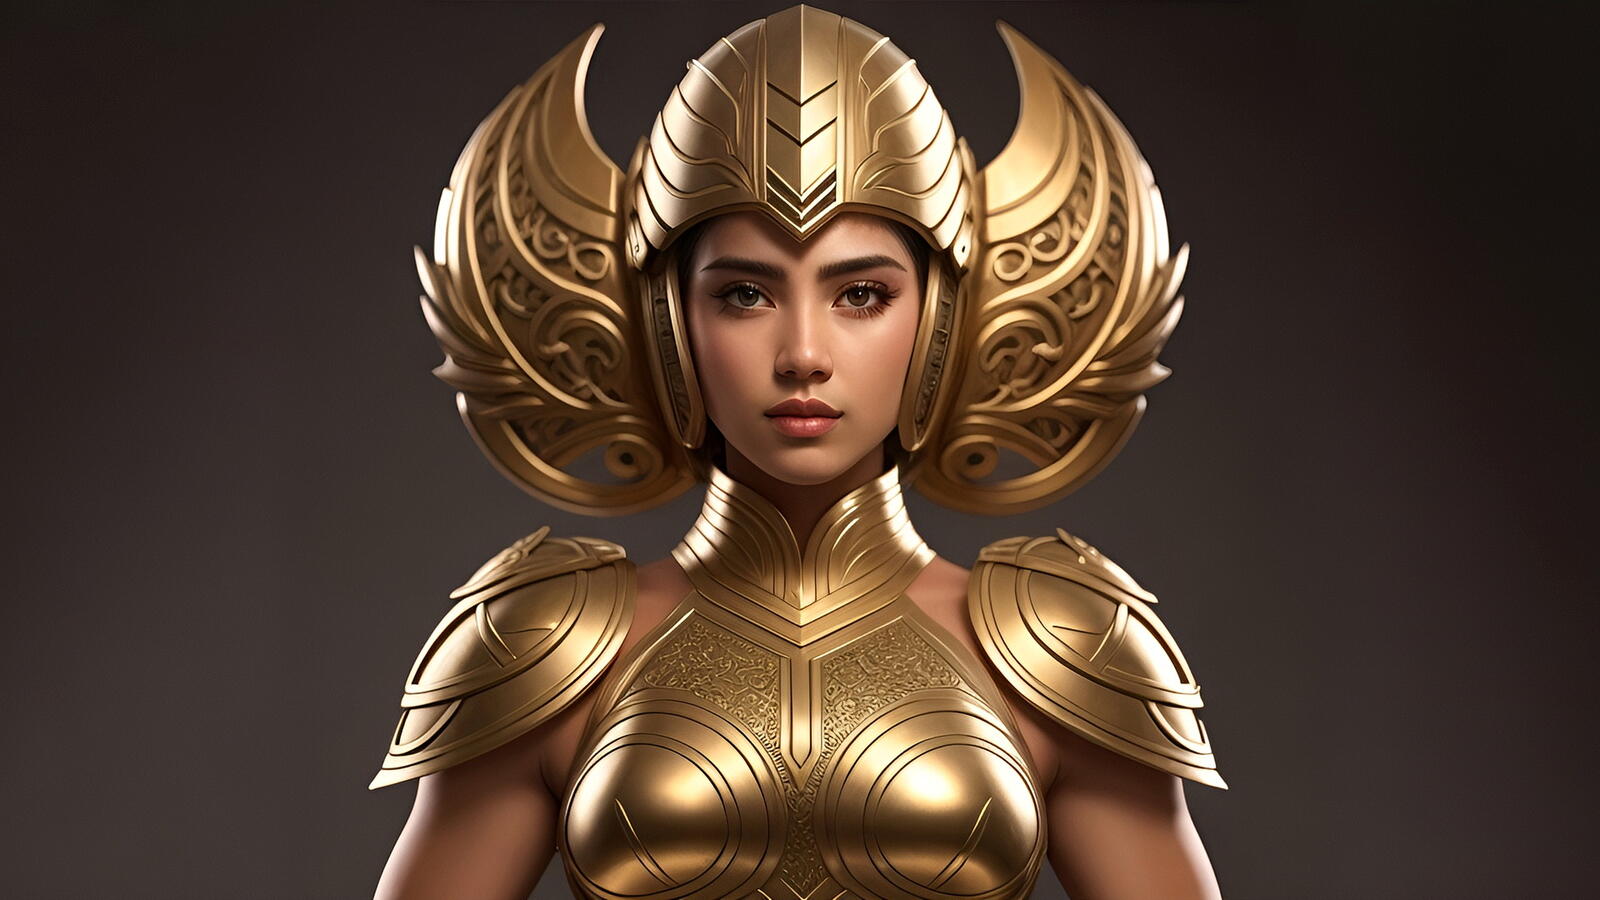 Бесплатное фото Девушка воин в золотом шлеме и доспехах